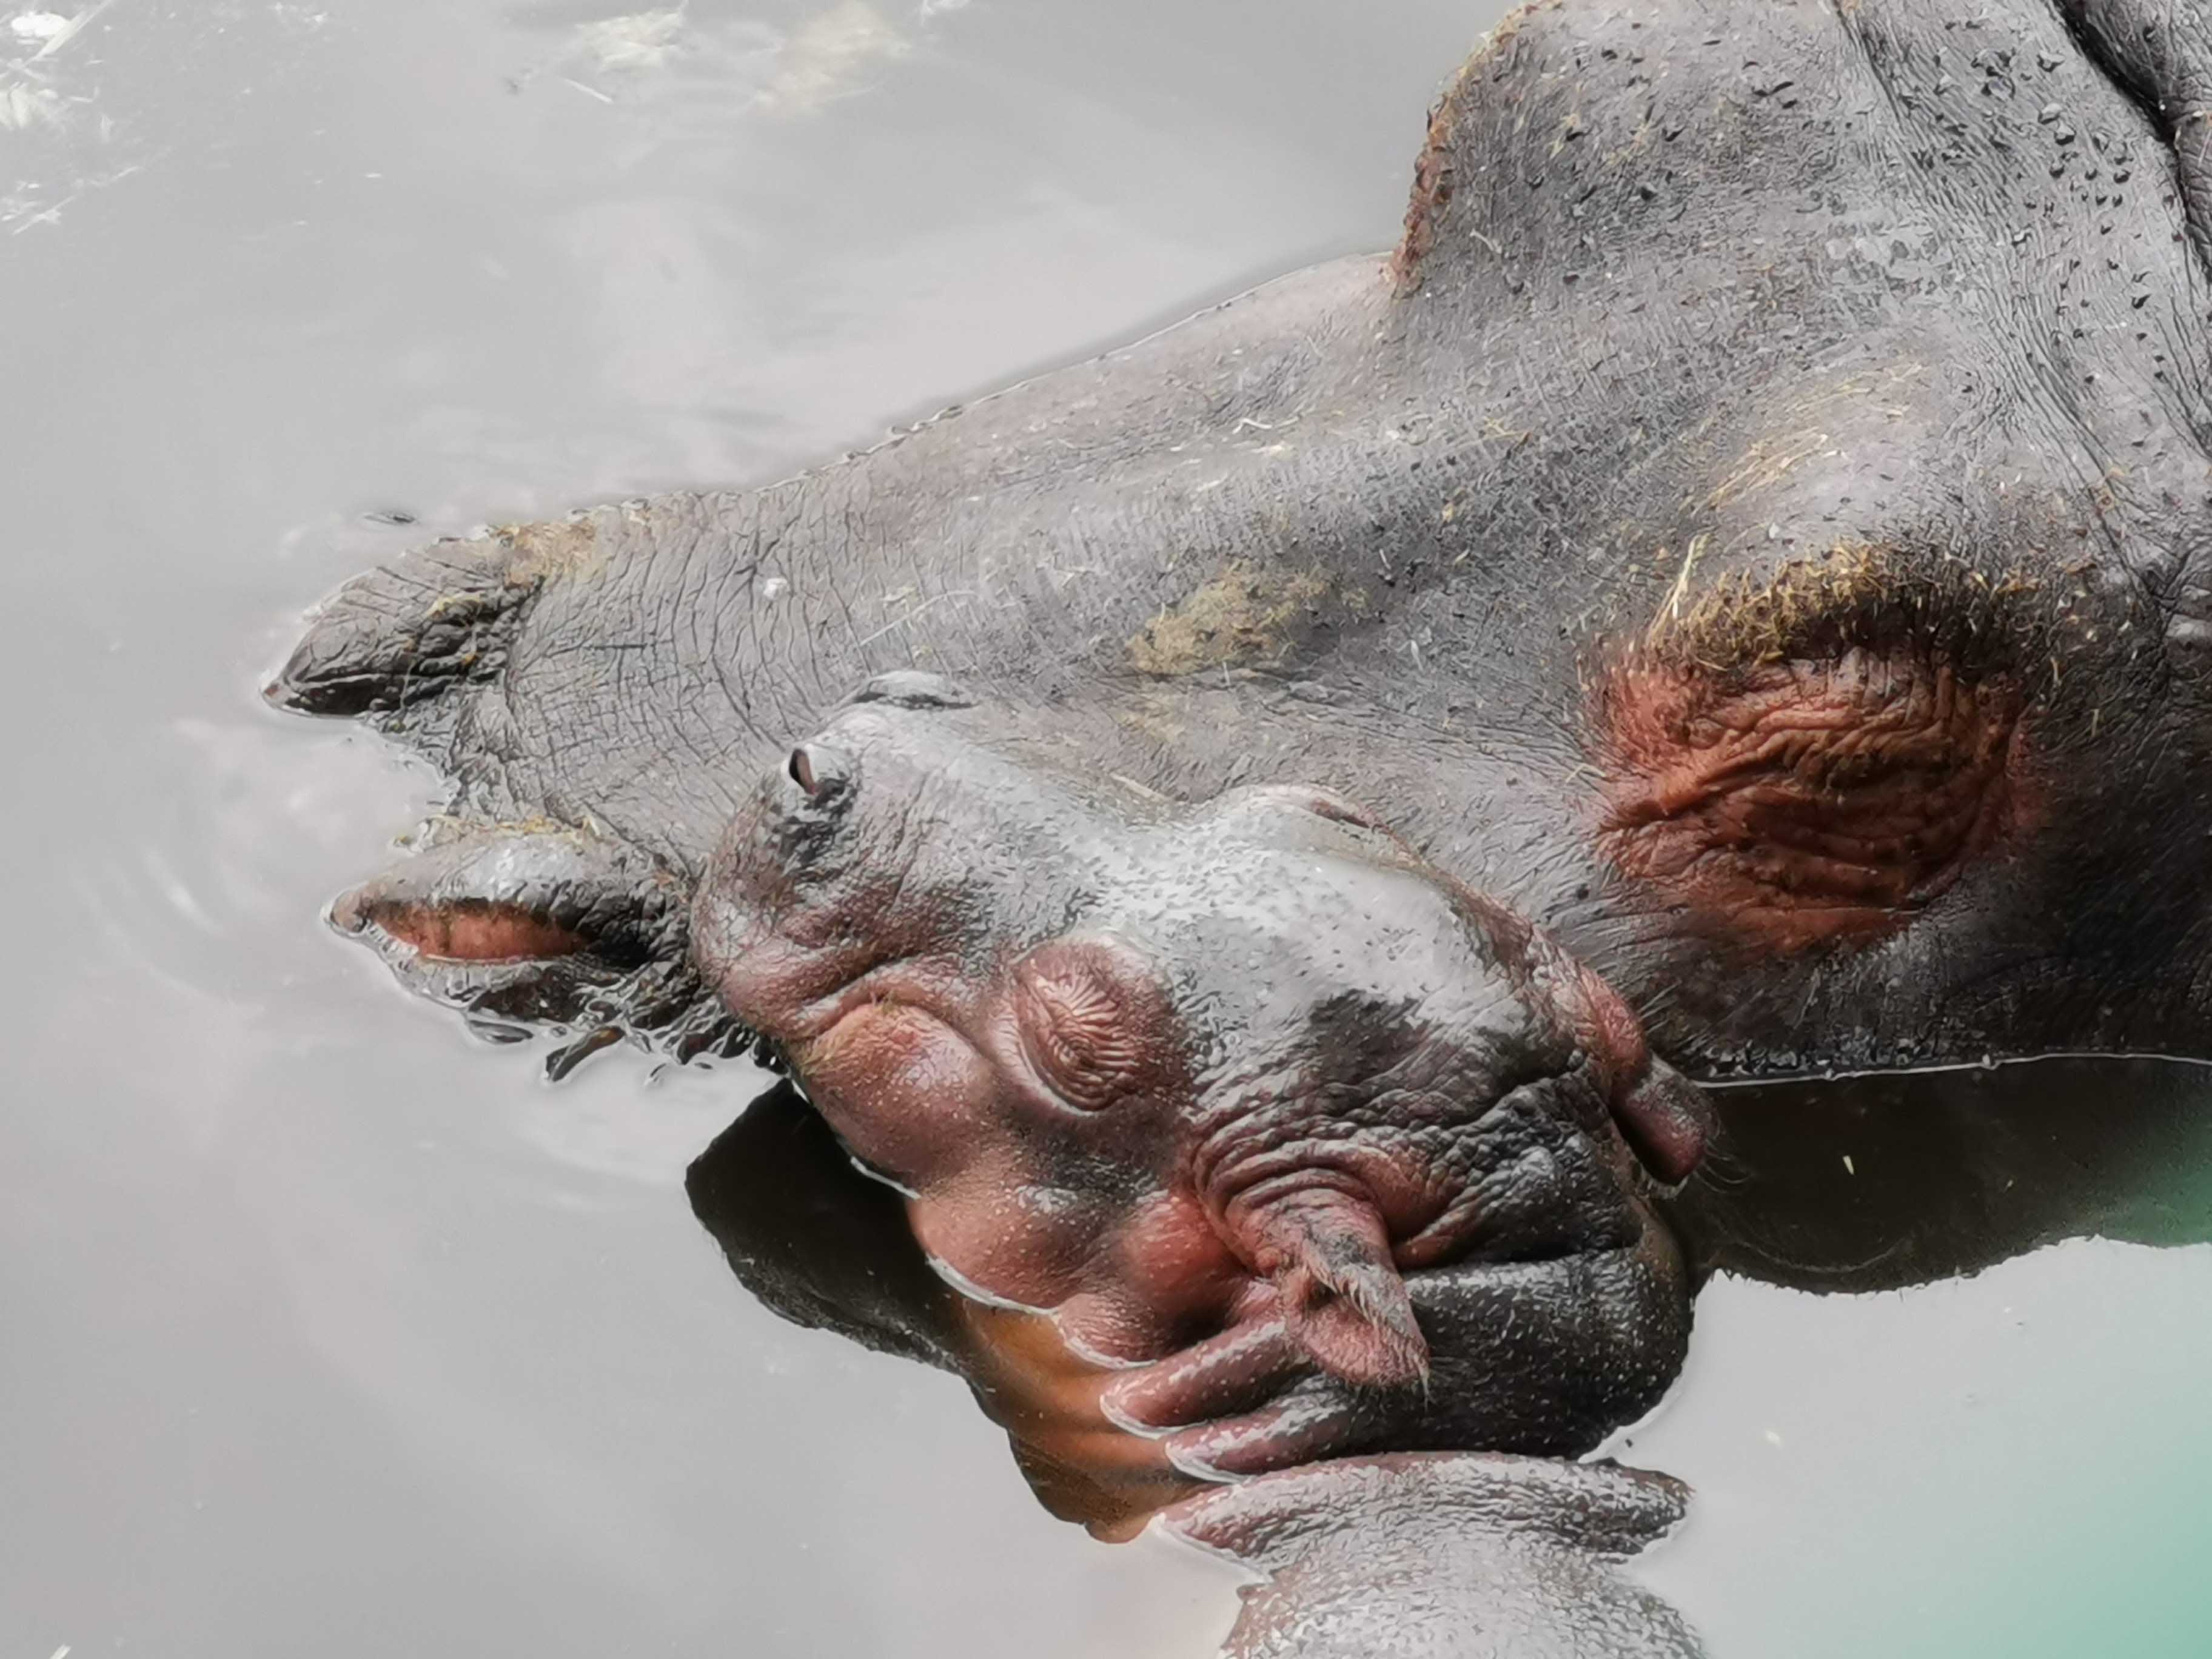 Nace cría de hipopótamo en Zacango #regionmx